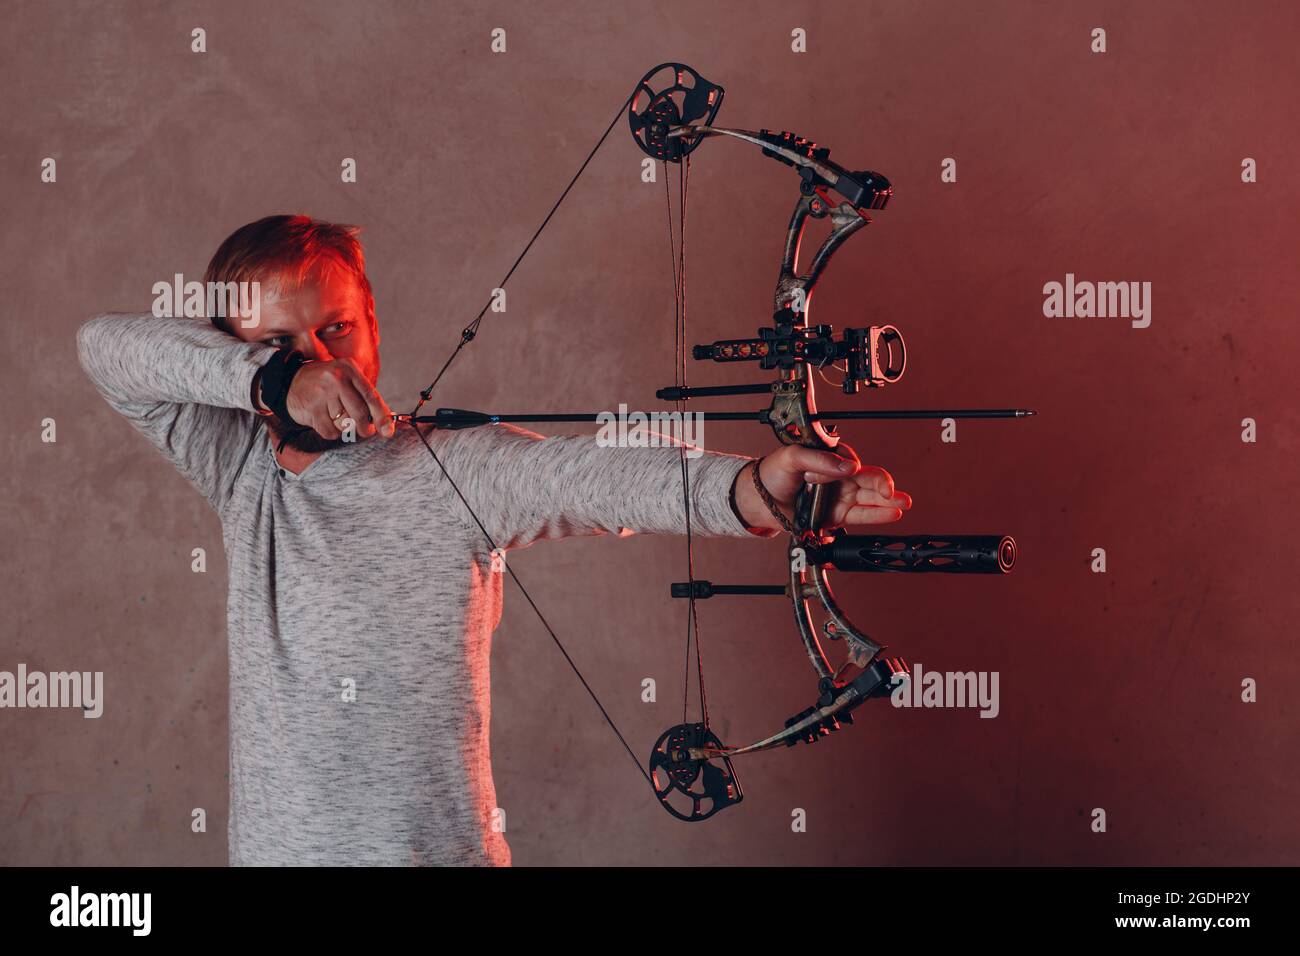 Bogenschütze mit modernem Block-Sport-Bogen und Pfeil Stockfotografie -  Alamy